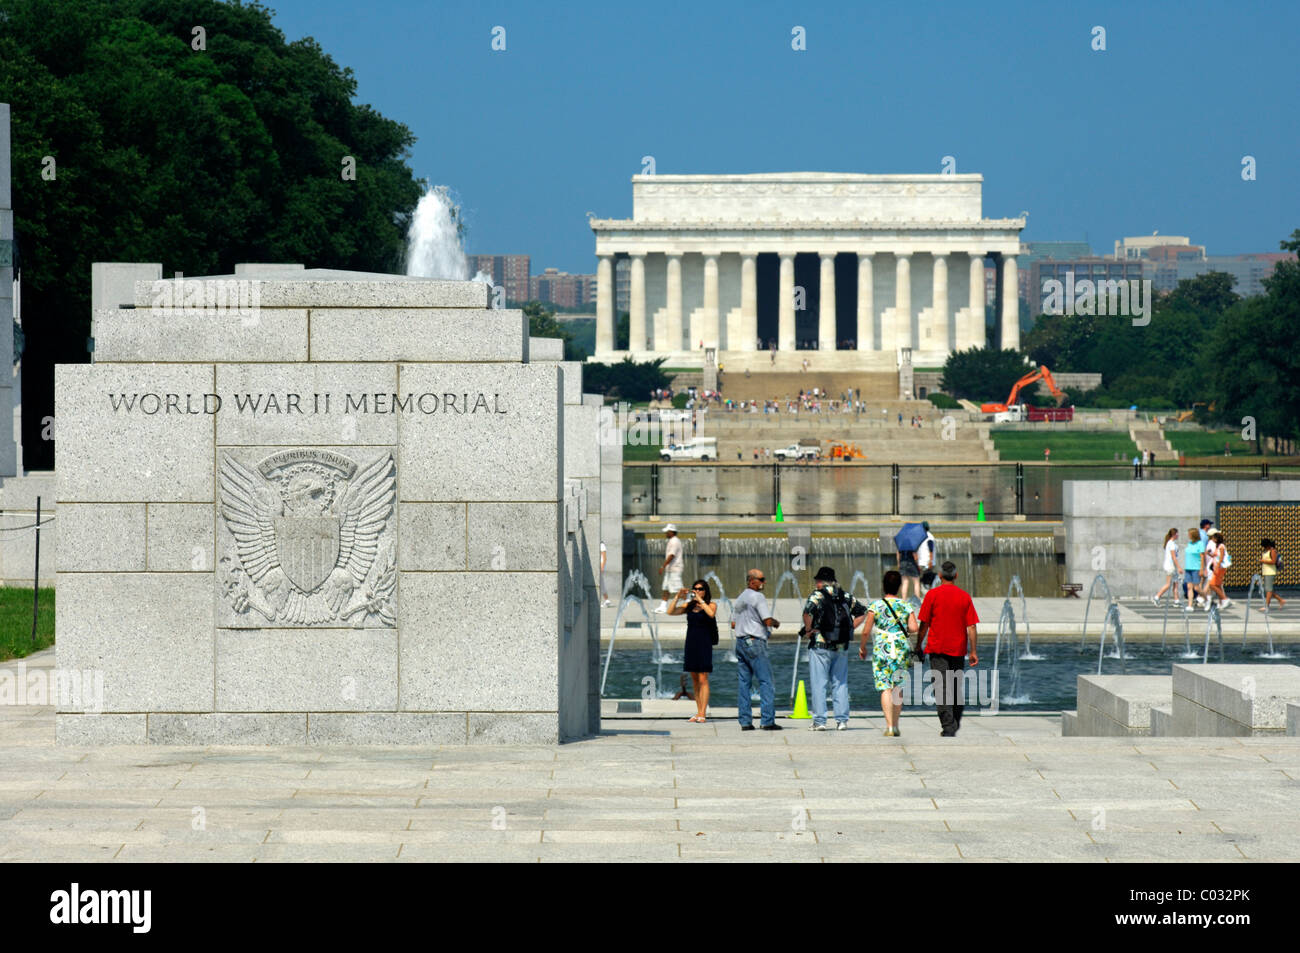 World War II Memorial, le Mémorial de Lincoln à l'arrière, Washington DC, USA, Amérique Latine Banque D'Images